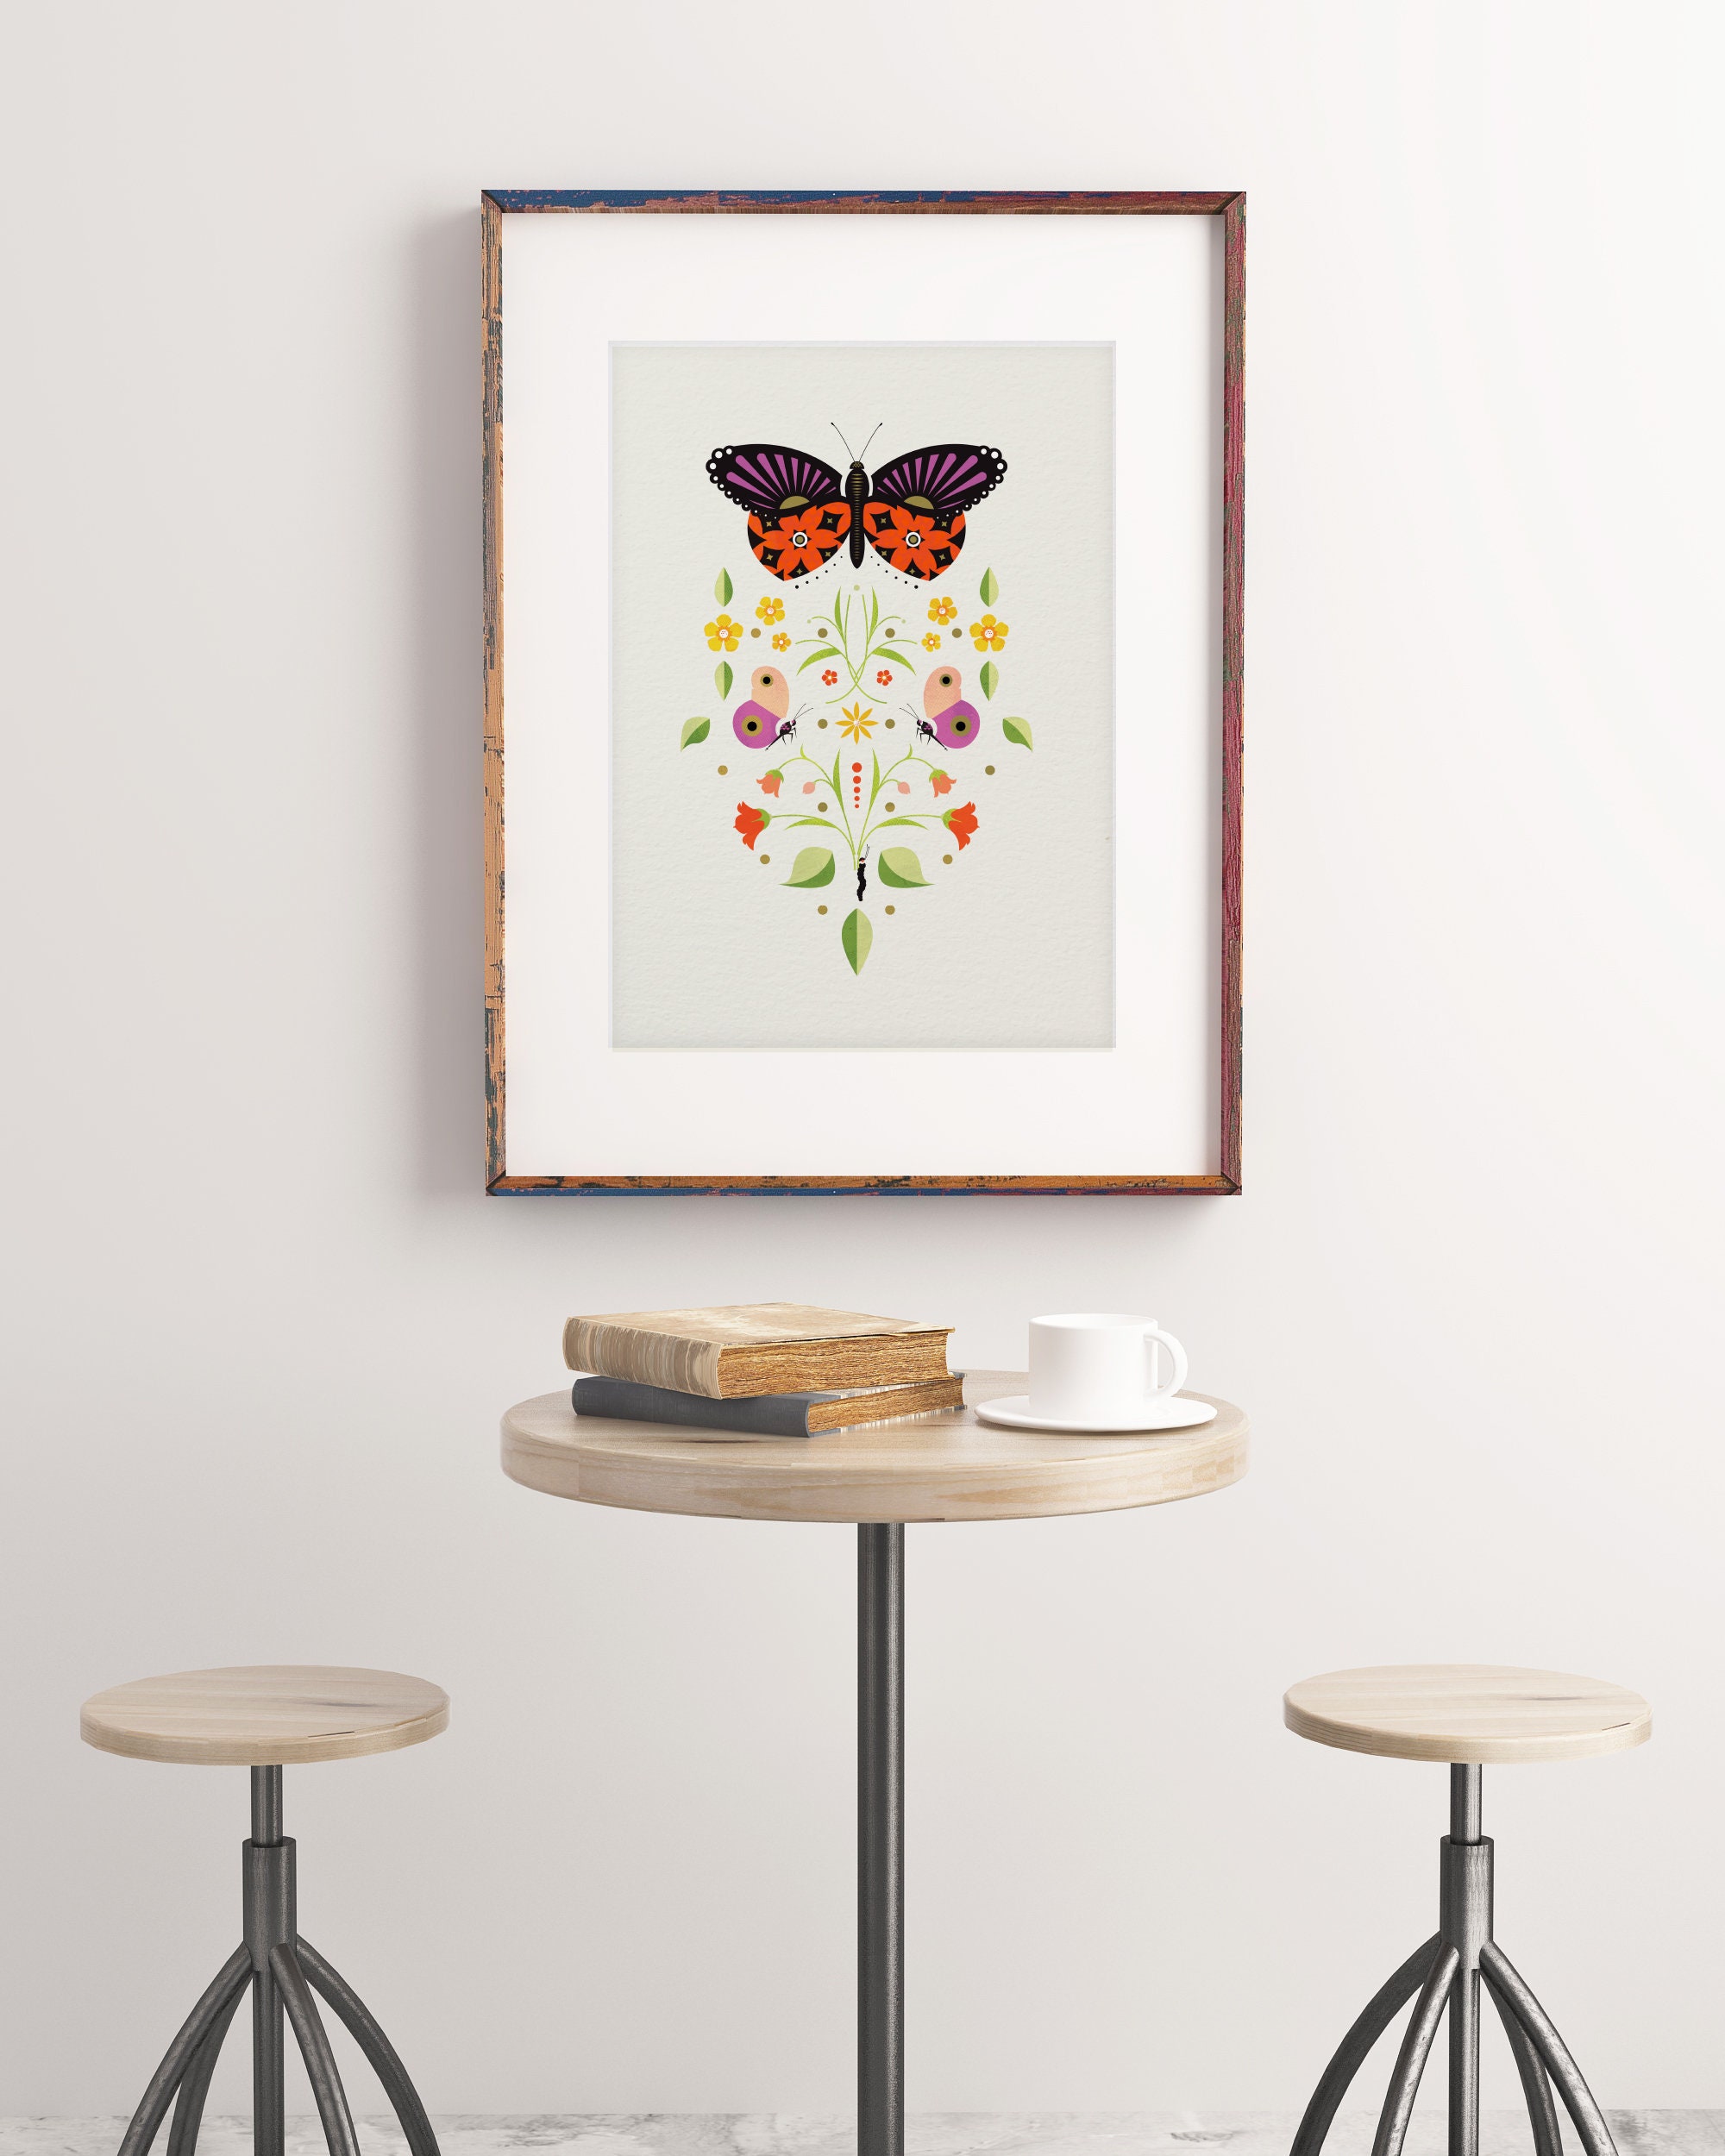 Symmetrical Butterfly Print Butterfly Wall Art Bedroom | Etsy